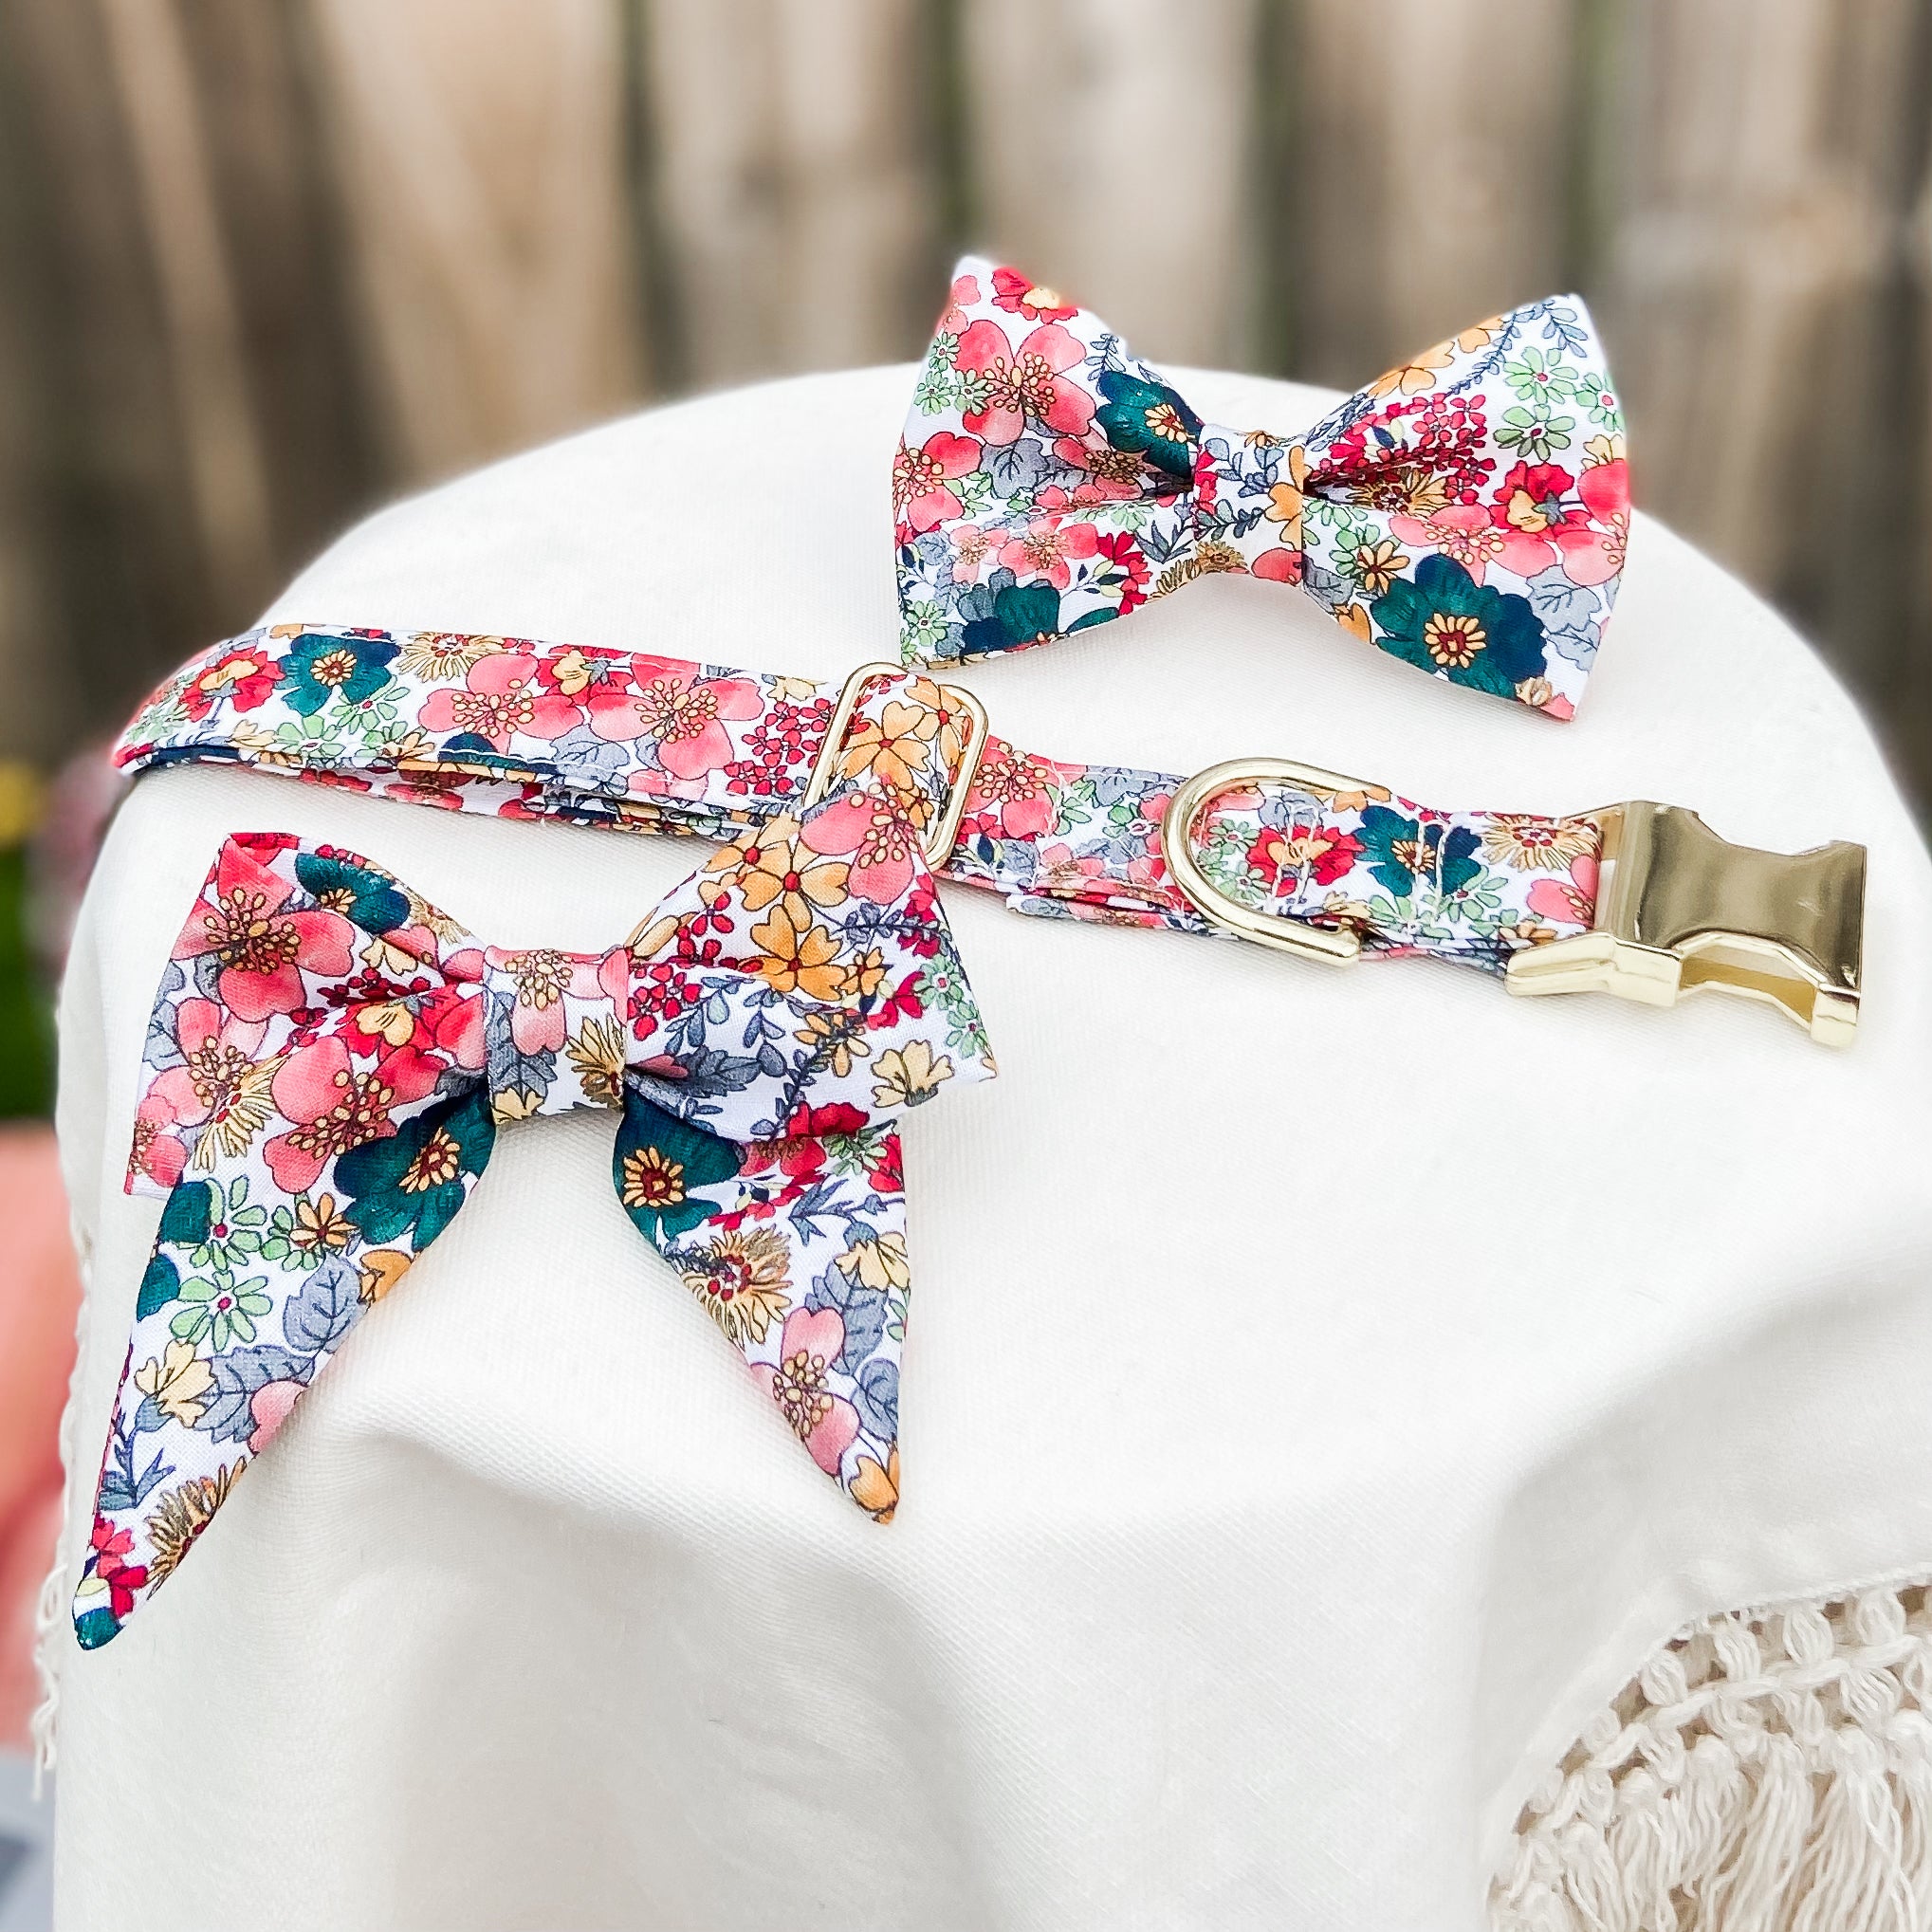 Vintage inspired floral dog bow